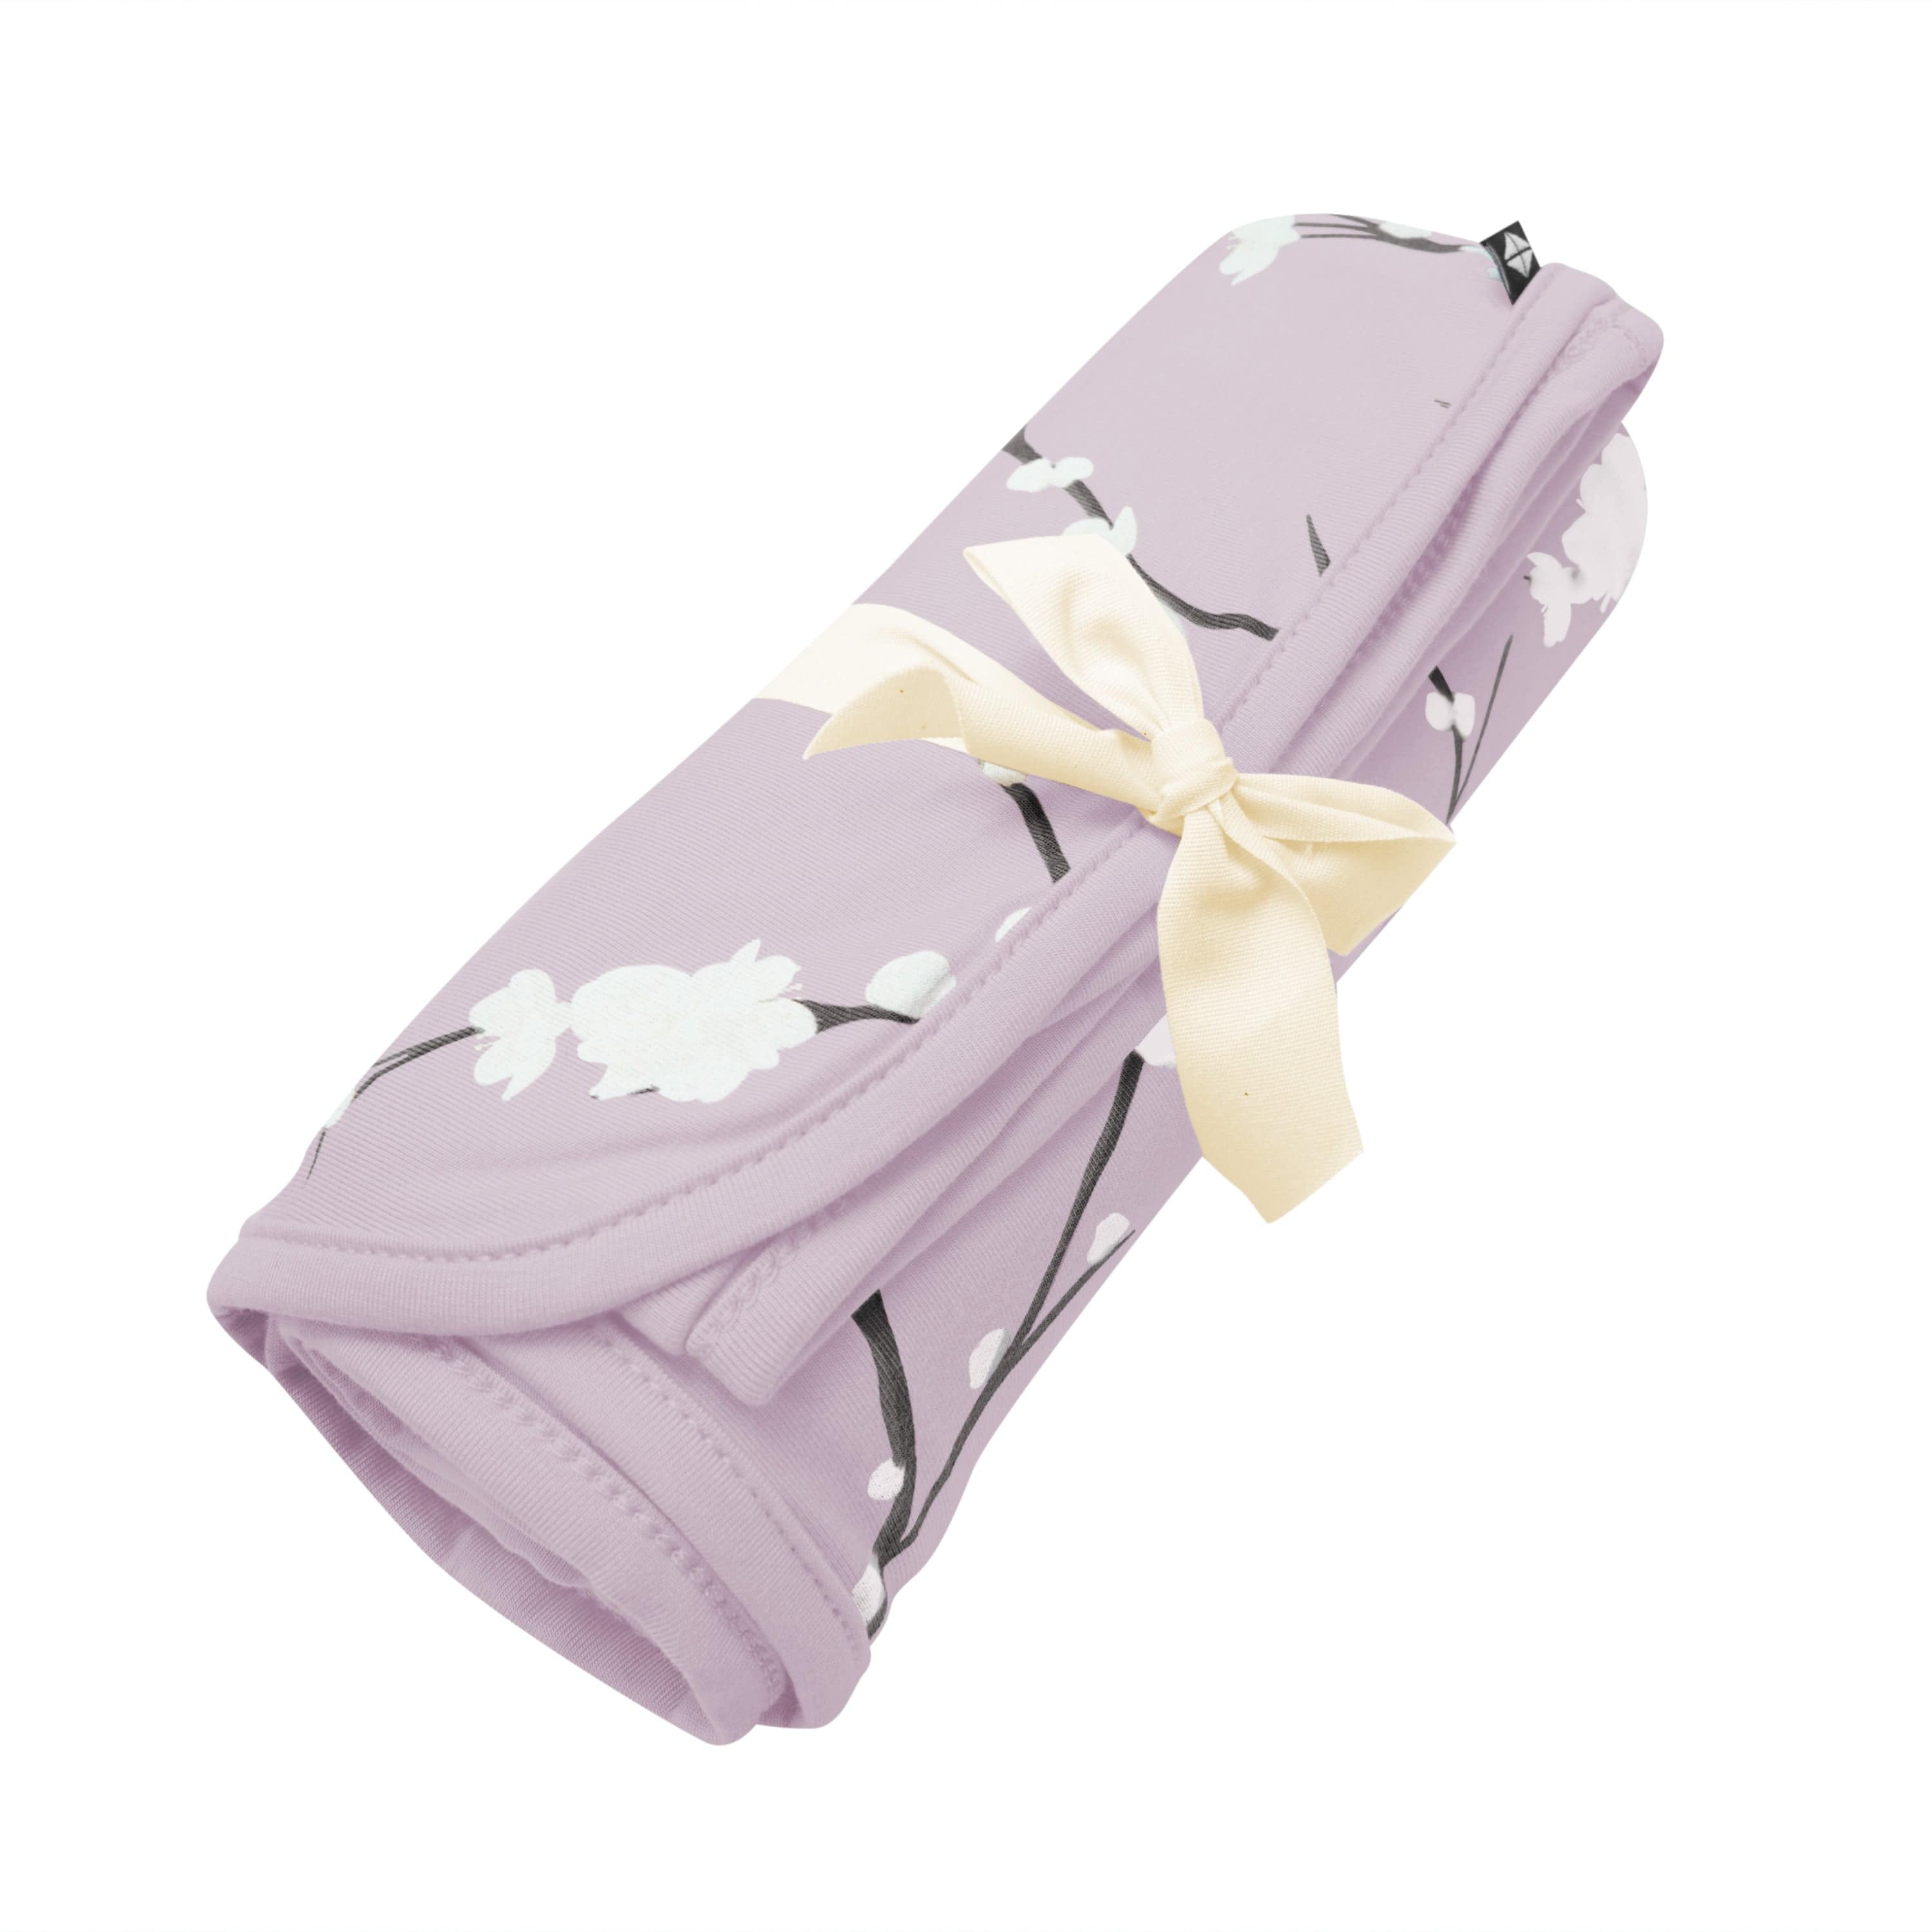 Kyte Baby Swaddling Blanket Cherry Blossom / Infant Swaddle Blanket in Cherry Blossom